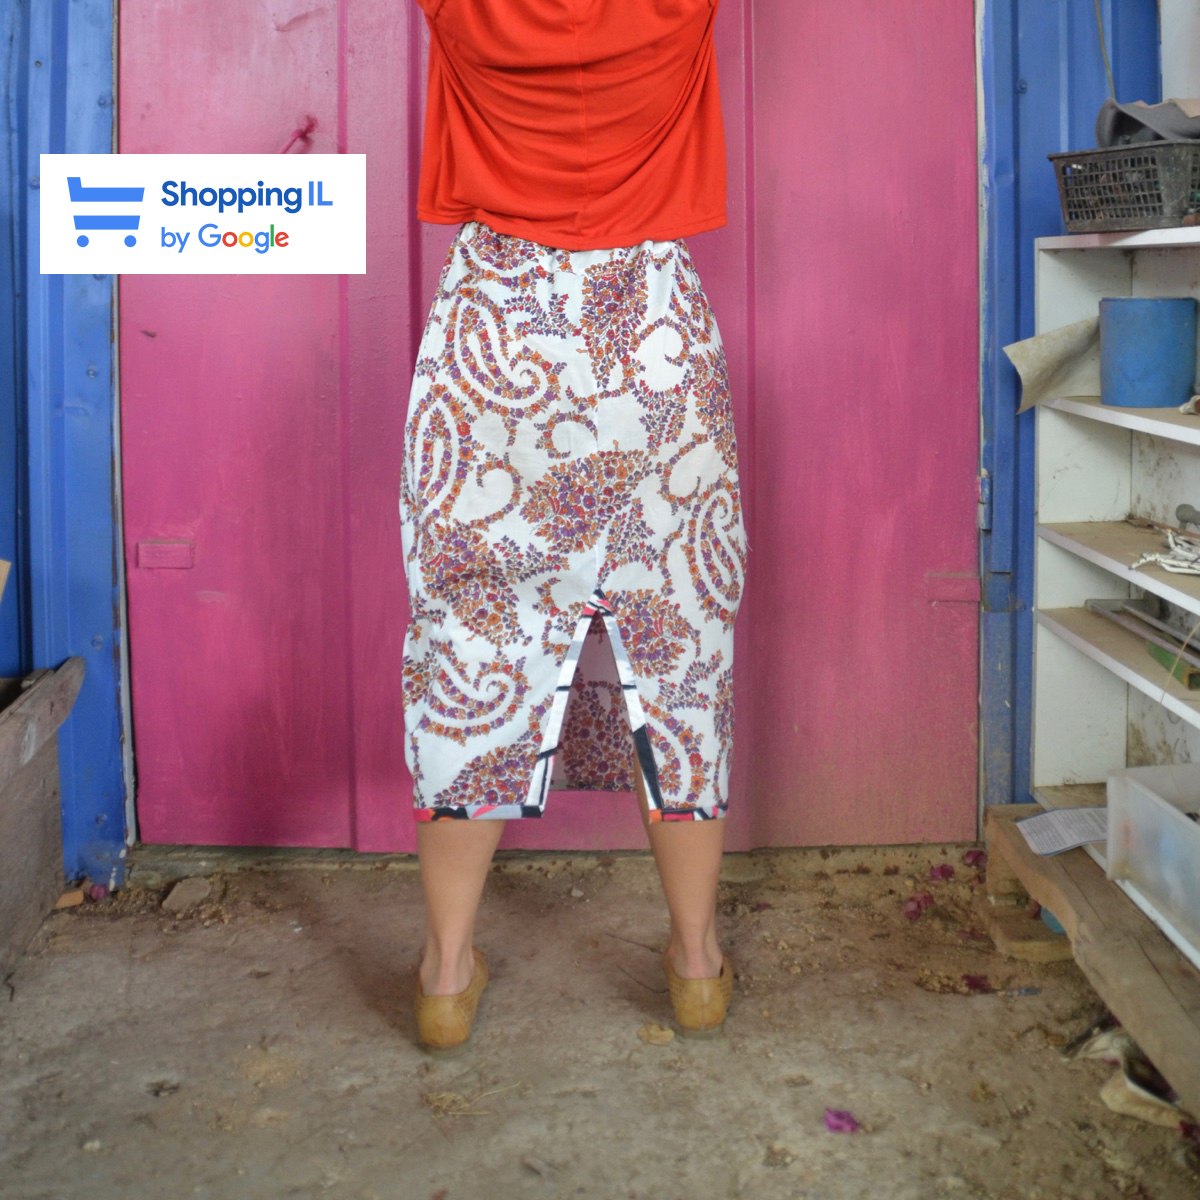 חצאית ארוכה מדגם אילה עם הדפס פרחים סבנטיז - אחרונות במלאי במידה 14